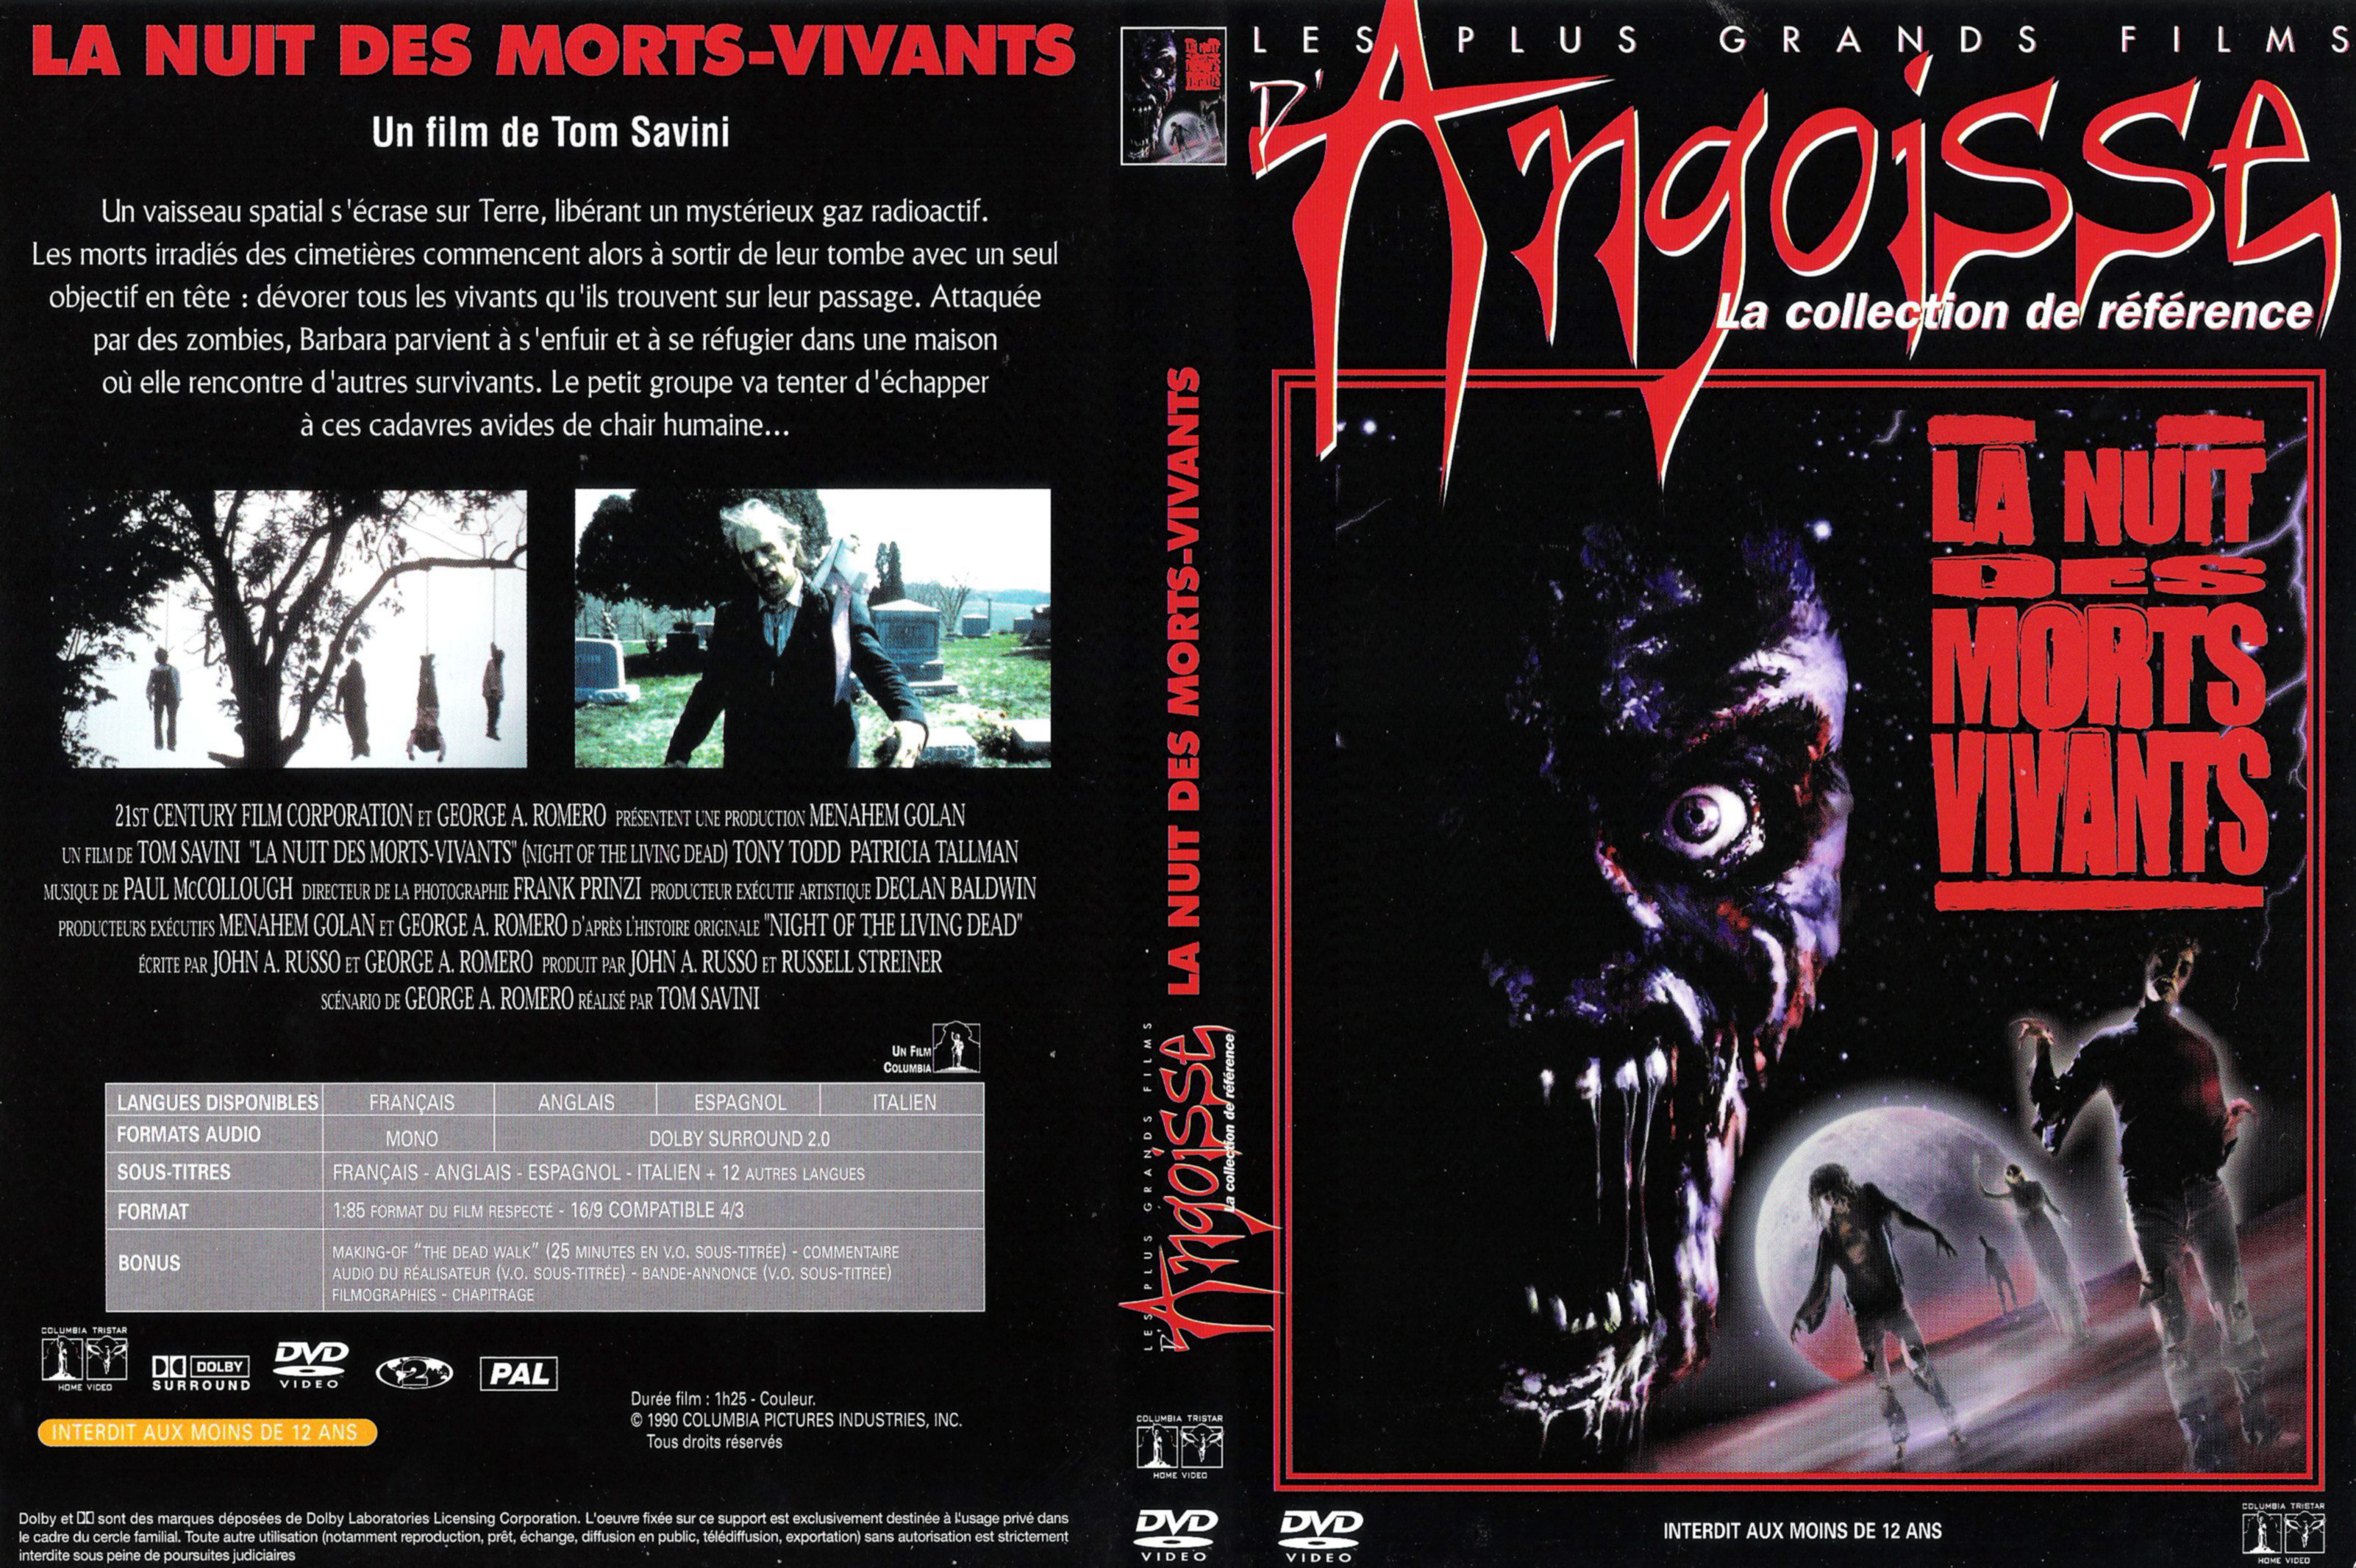 Jaquette DVD La nuit des morts vivants (1990)